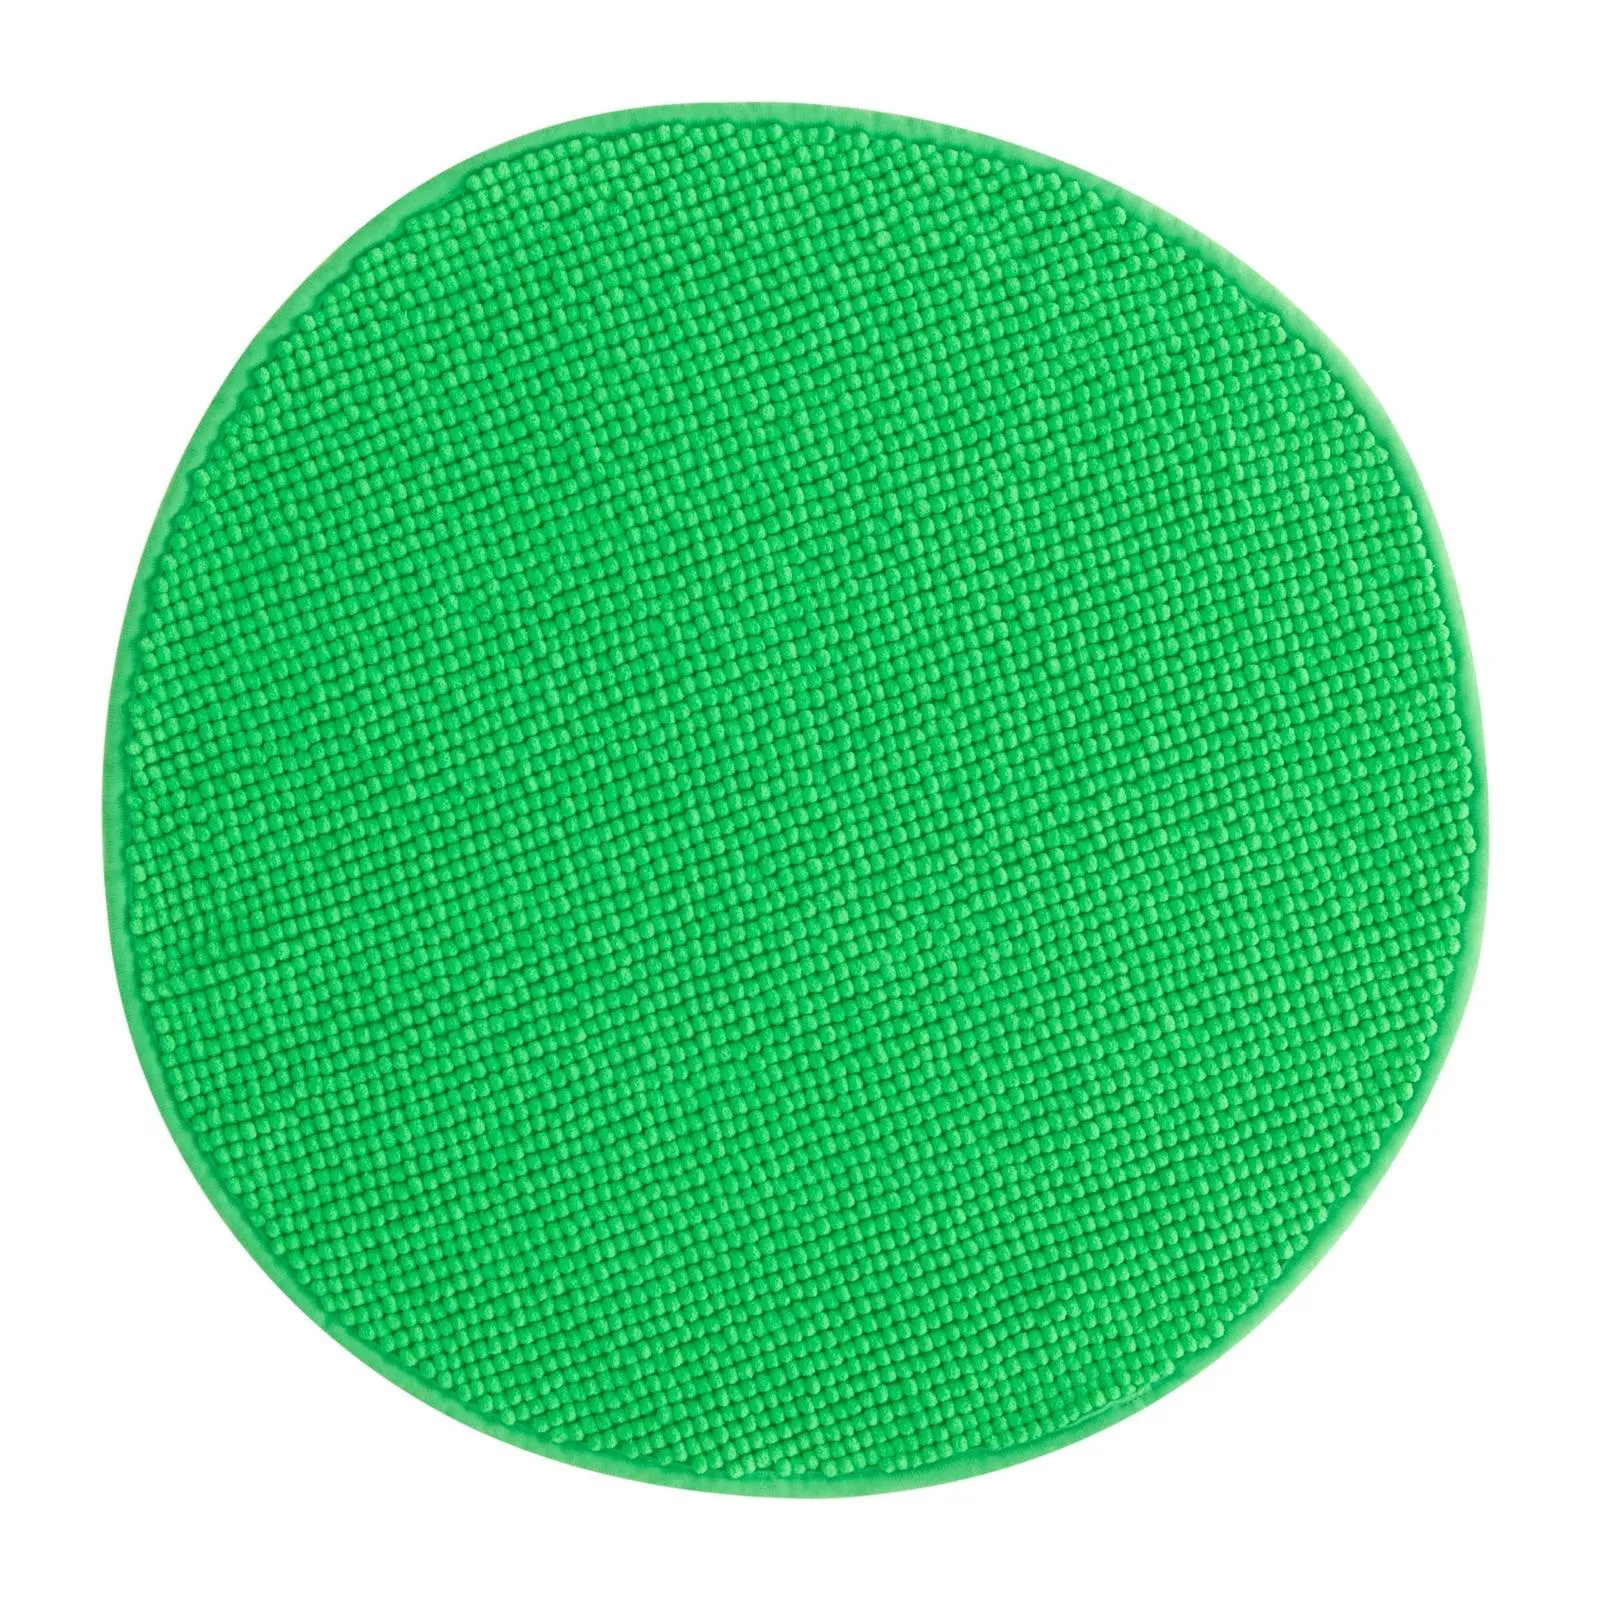 Tappeto bagno a forma di stella, 100% cotone, colore verde